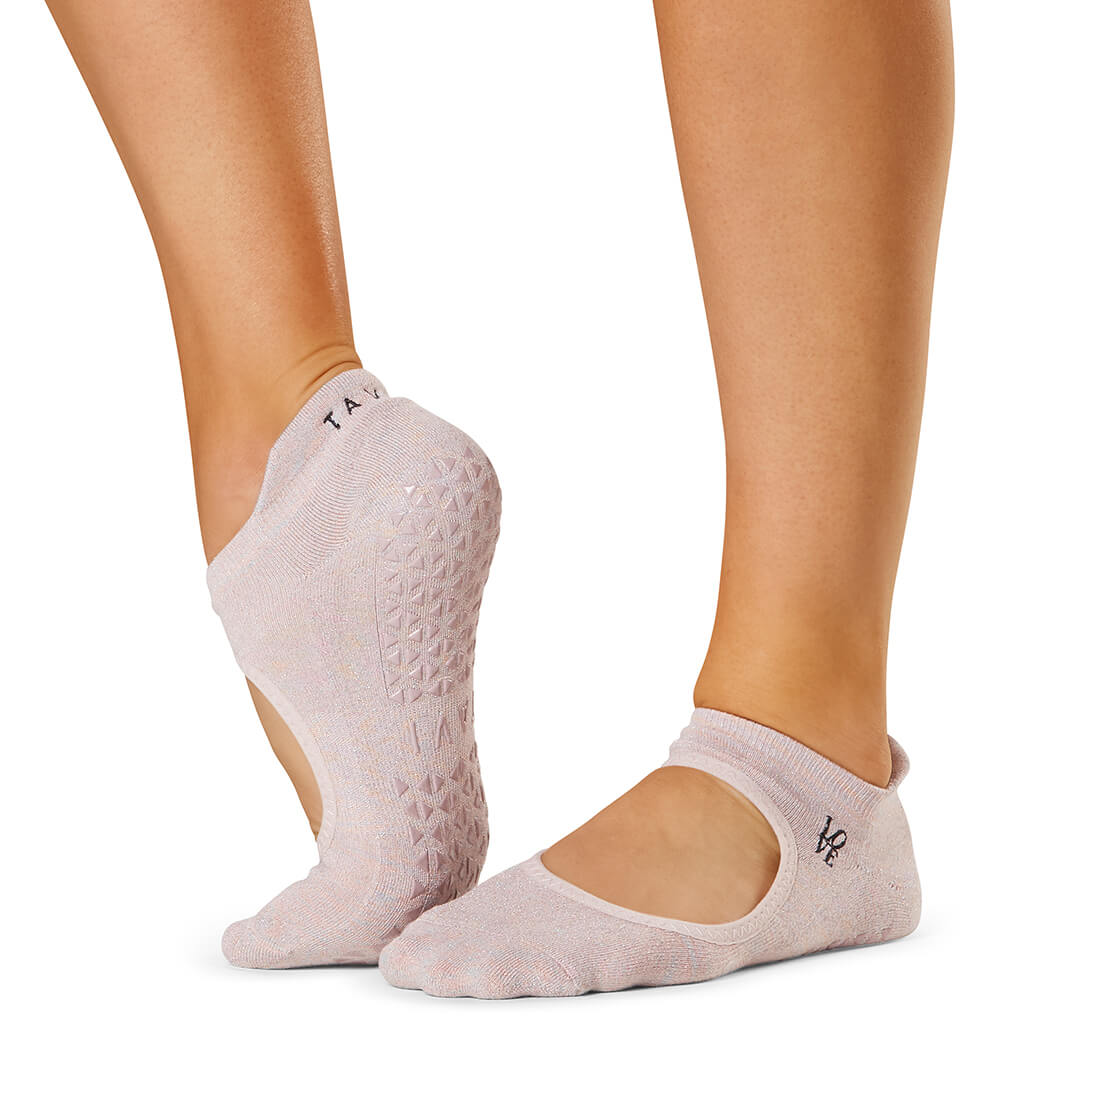 Azijn vereist Saai Yogasokken kopen? De antislip sokken Emma L Word zijn nu verkrijgbaar!